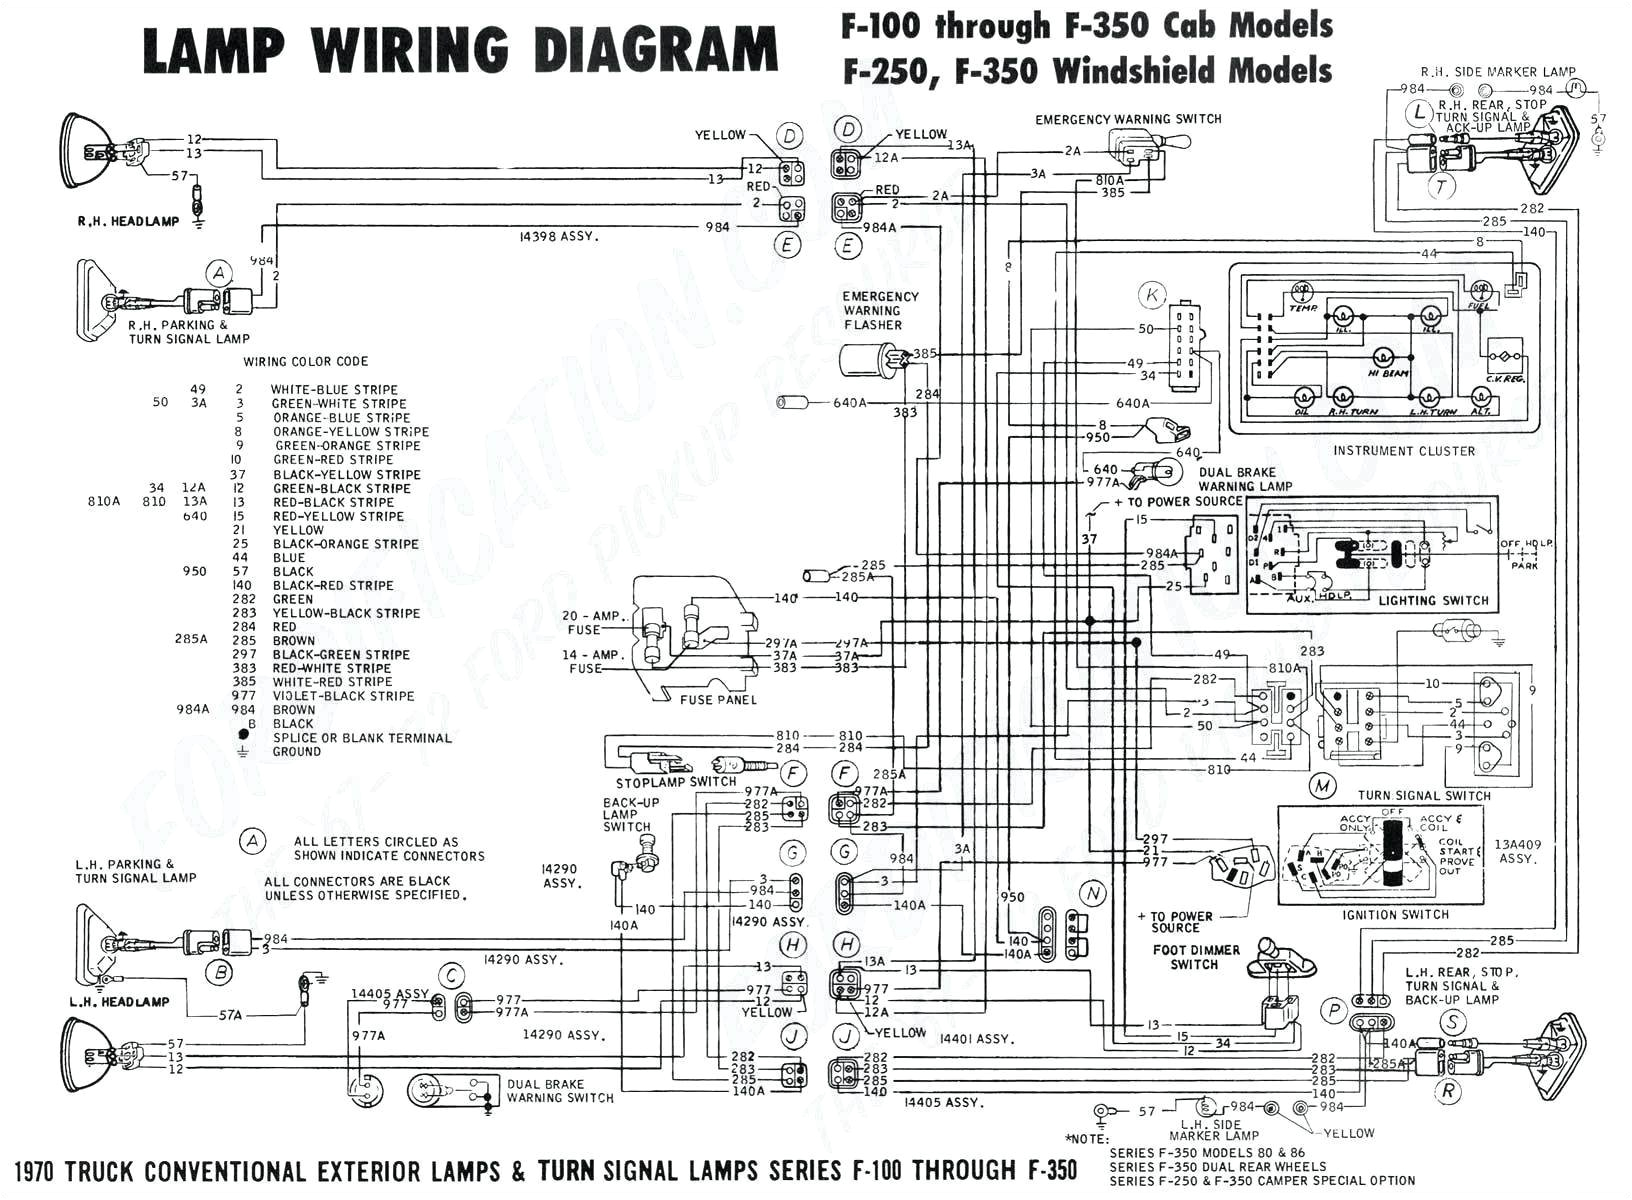 denso 13b wiring diagram wiring diagram page denso 13b wiring diagram blog wiring diagram denso 13b